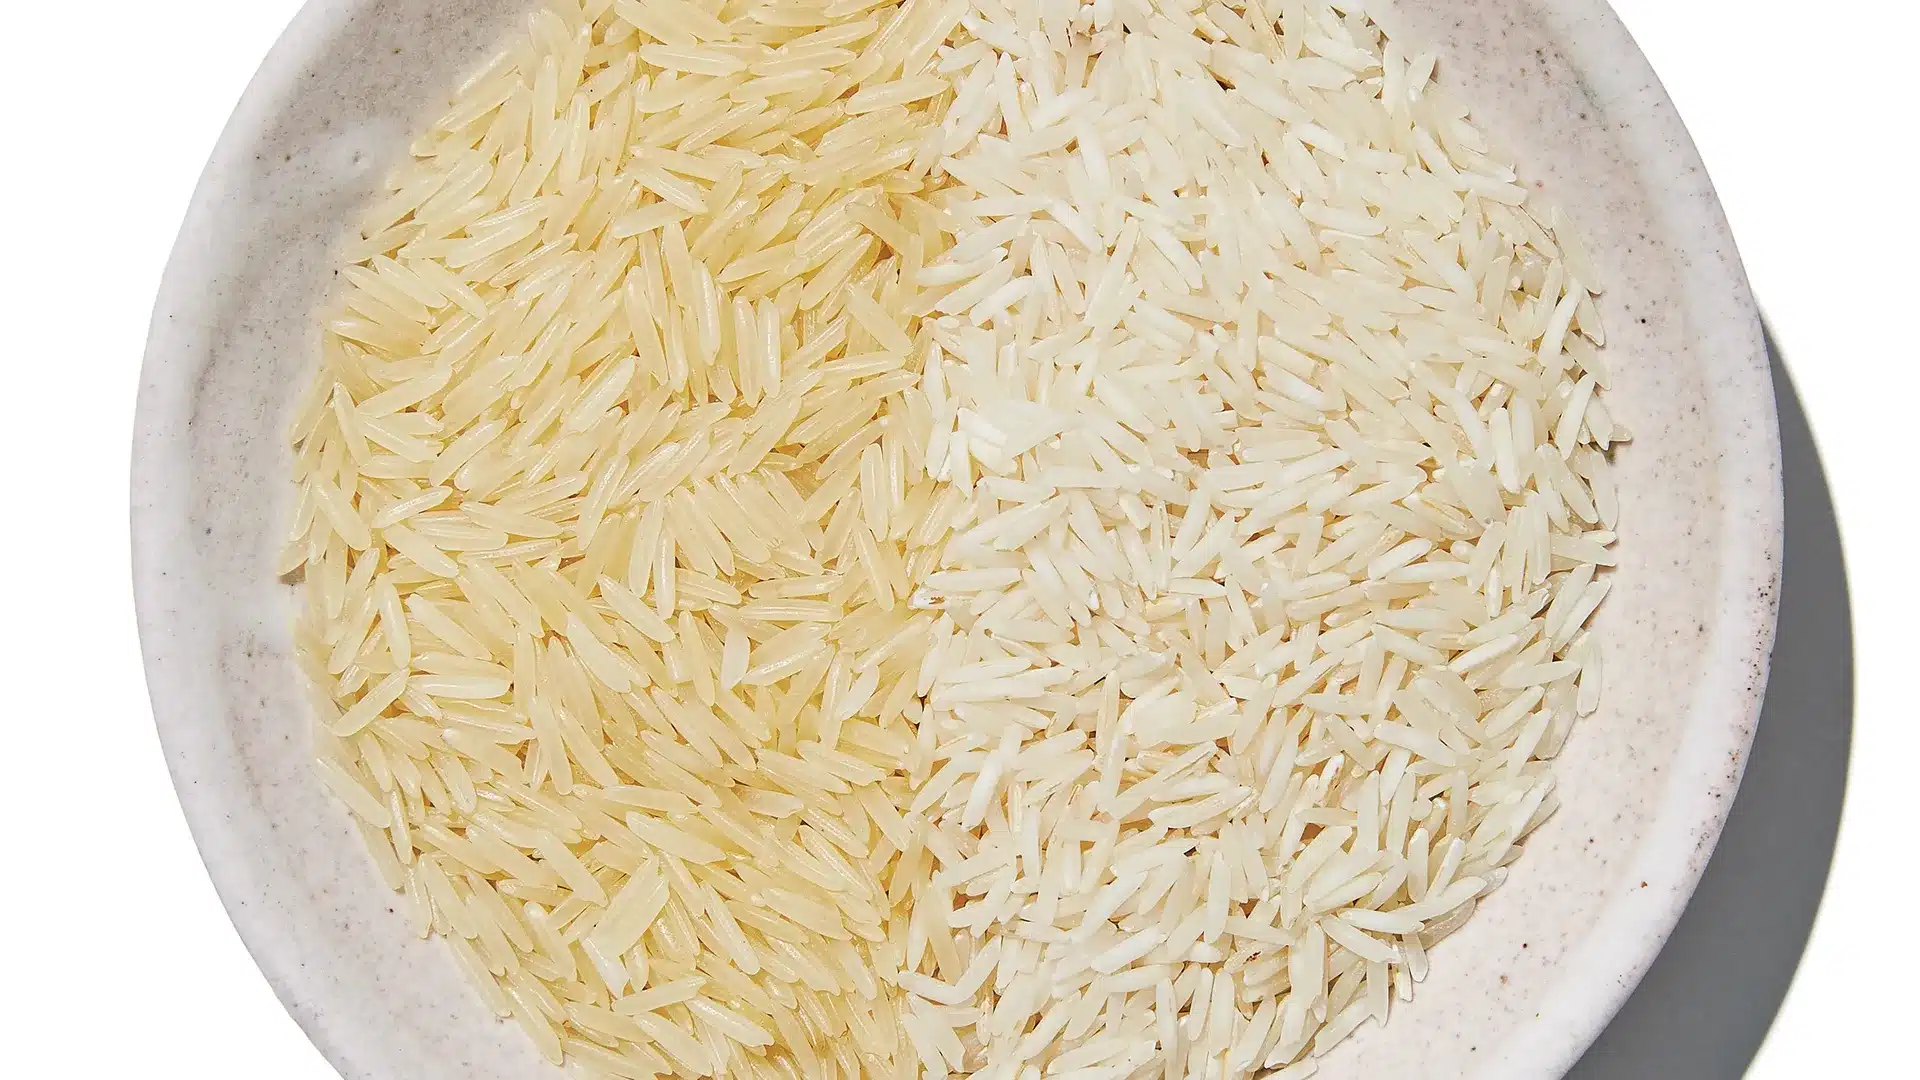 تفاوت برنج ایرانی و خارجی